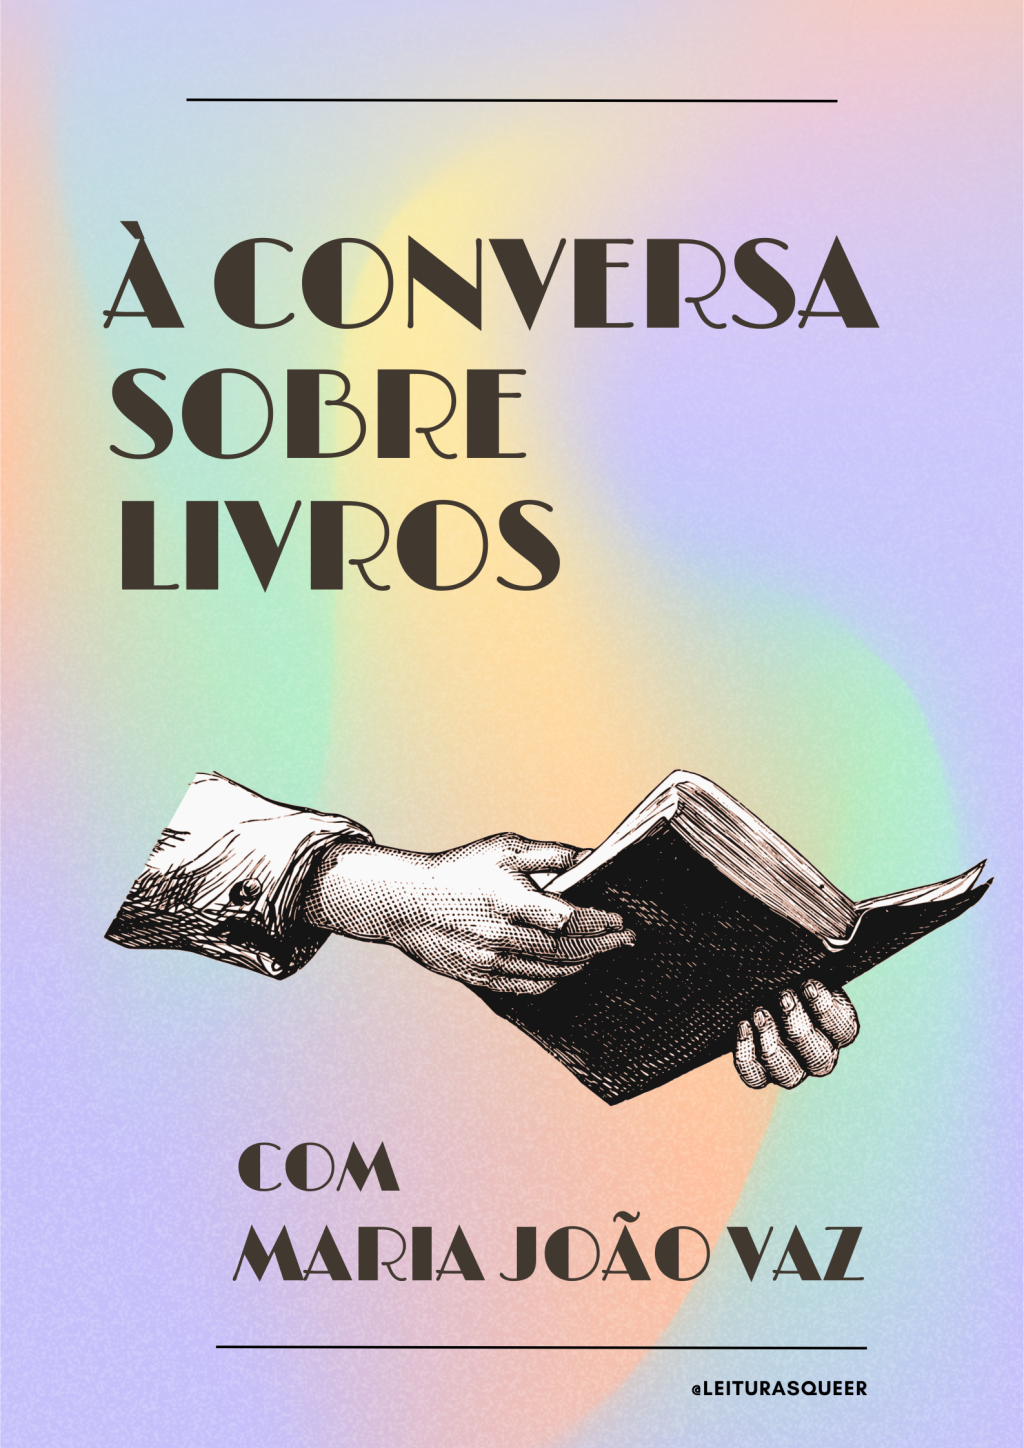 À Conversa sobre Livros com Maria João Vaz